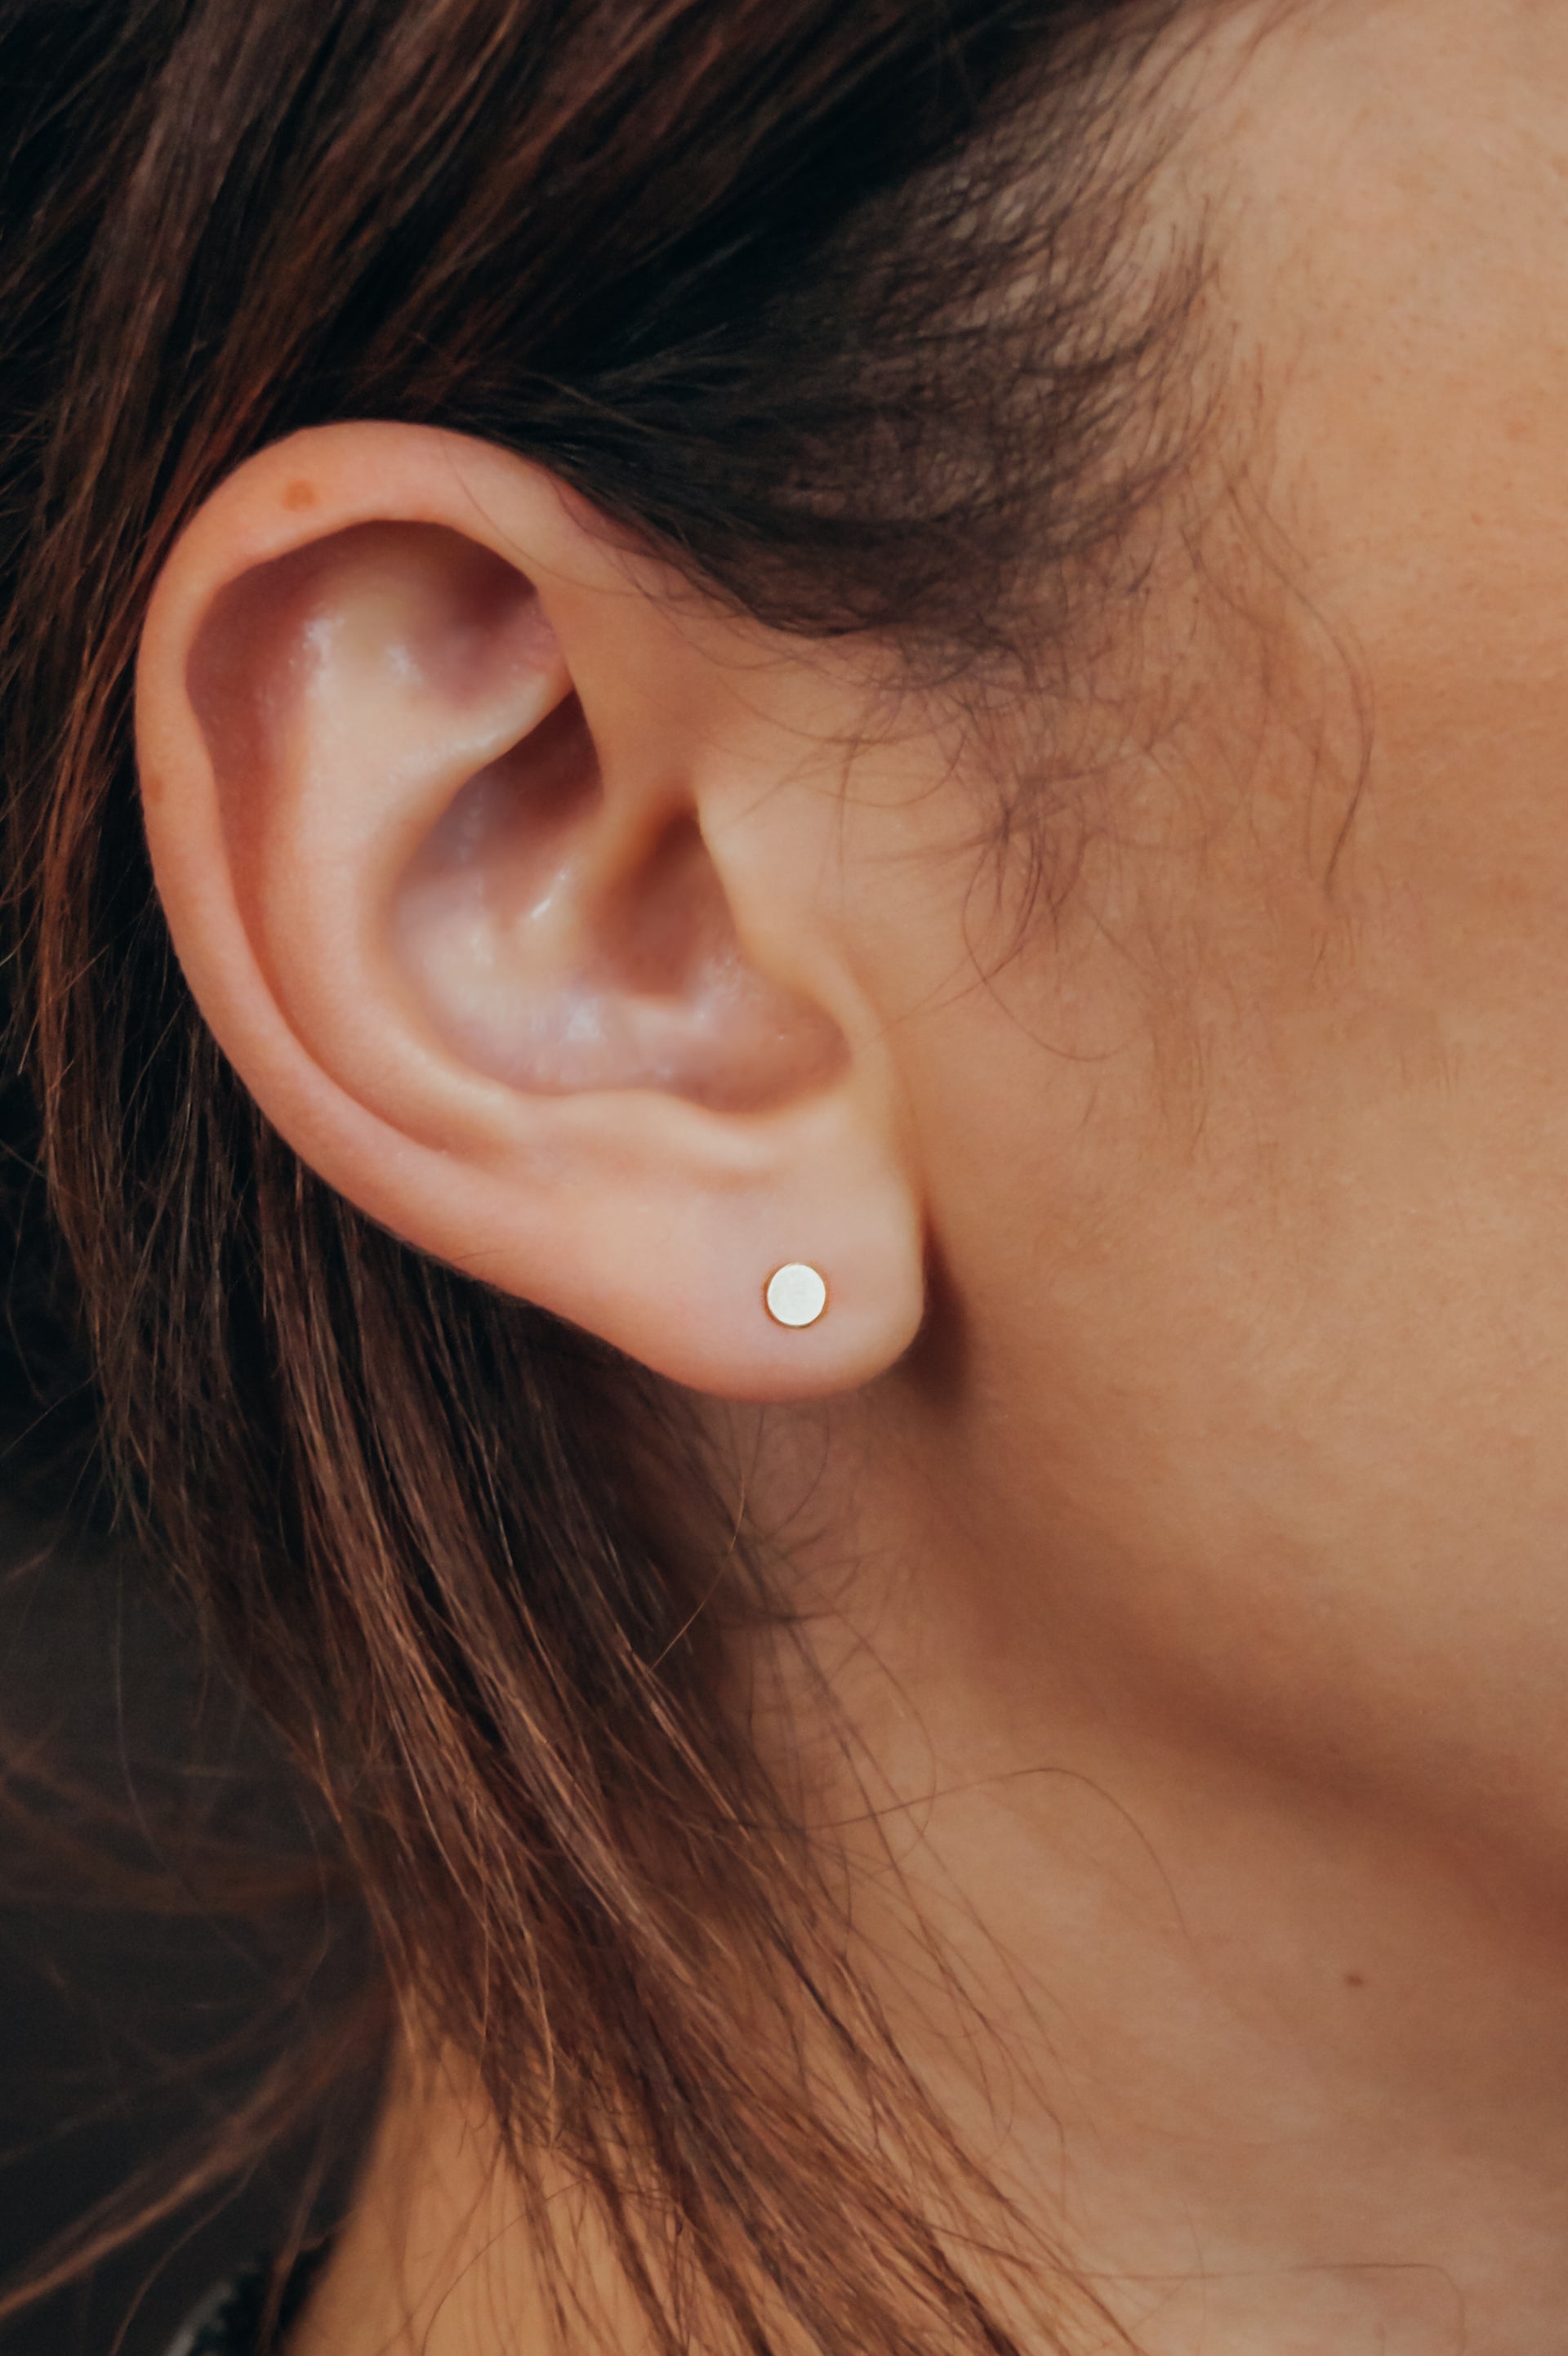 Mini Dot Stud Earrings in Gold Fill or Sterling Silver 14K Gold Fill / Single Stud Earring